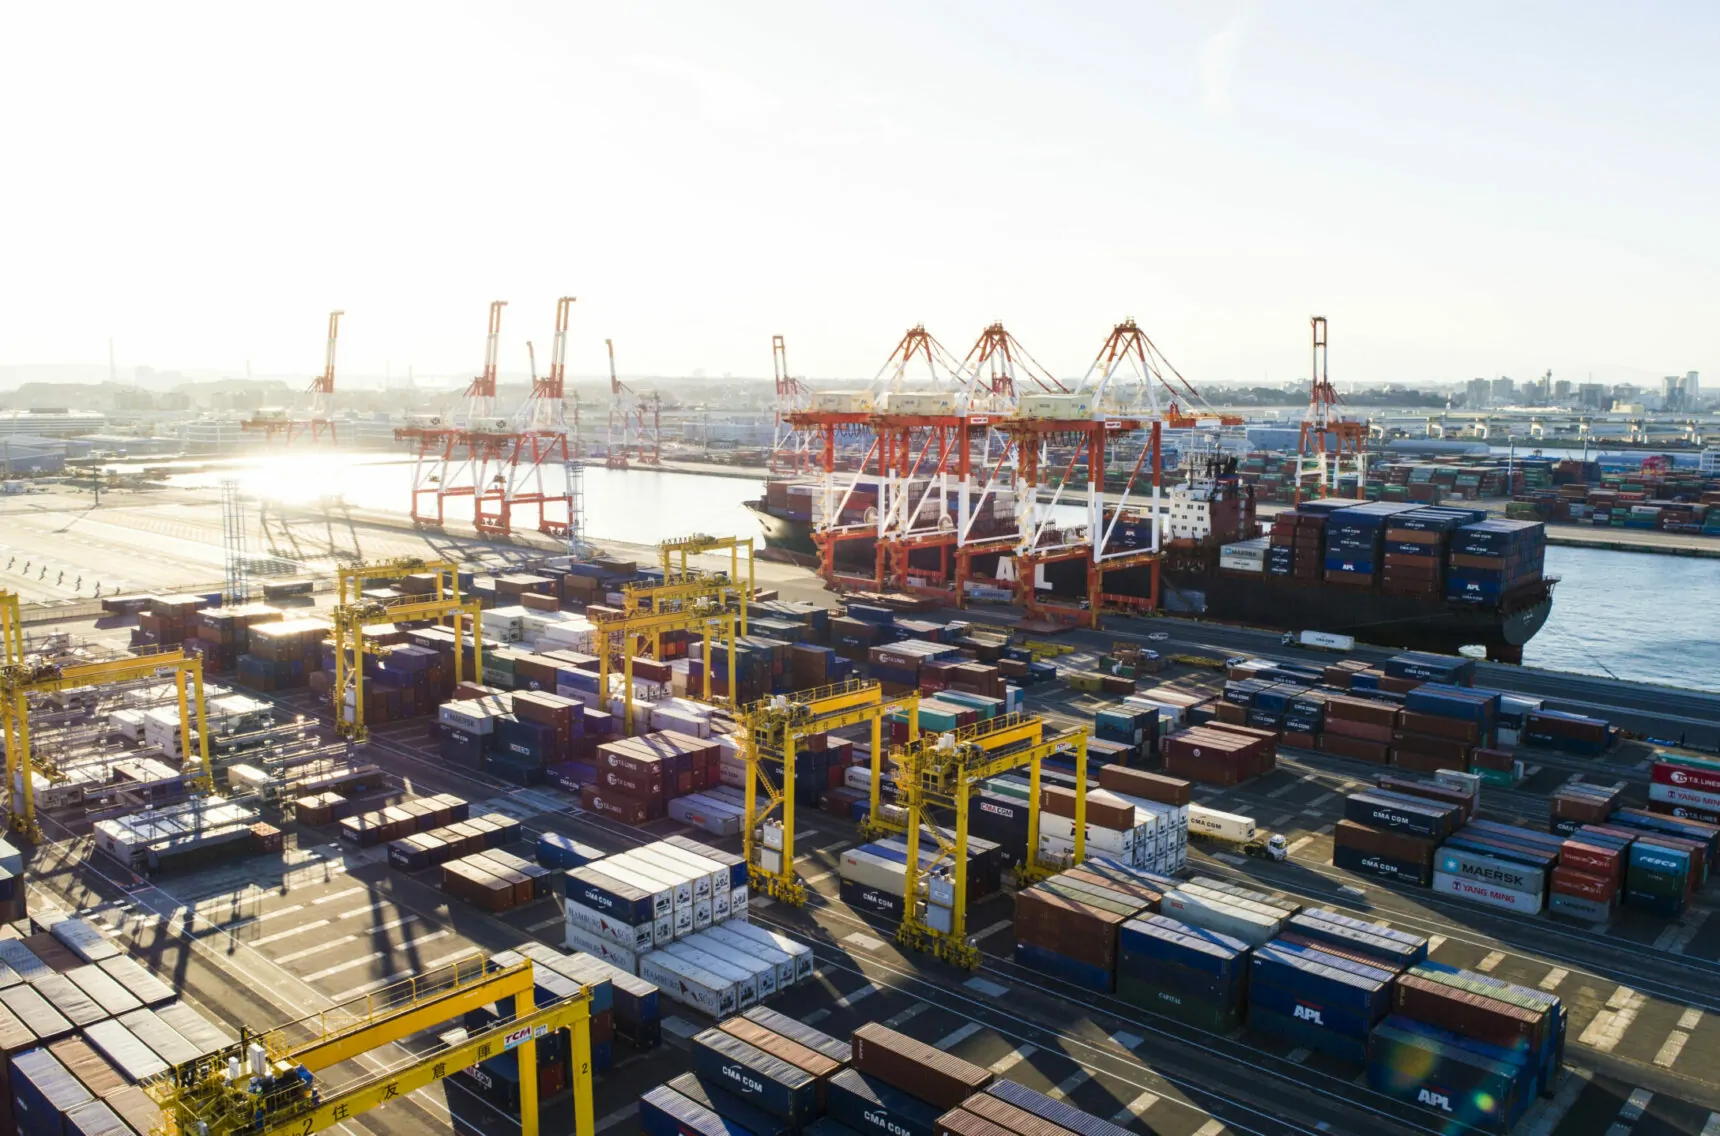 Bild von einem Industriehafen mit Containerschiffen, Supply Chain Management & Logistik